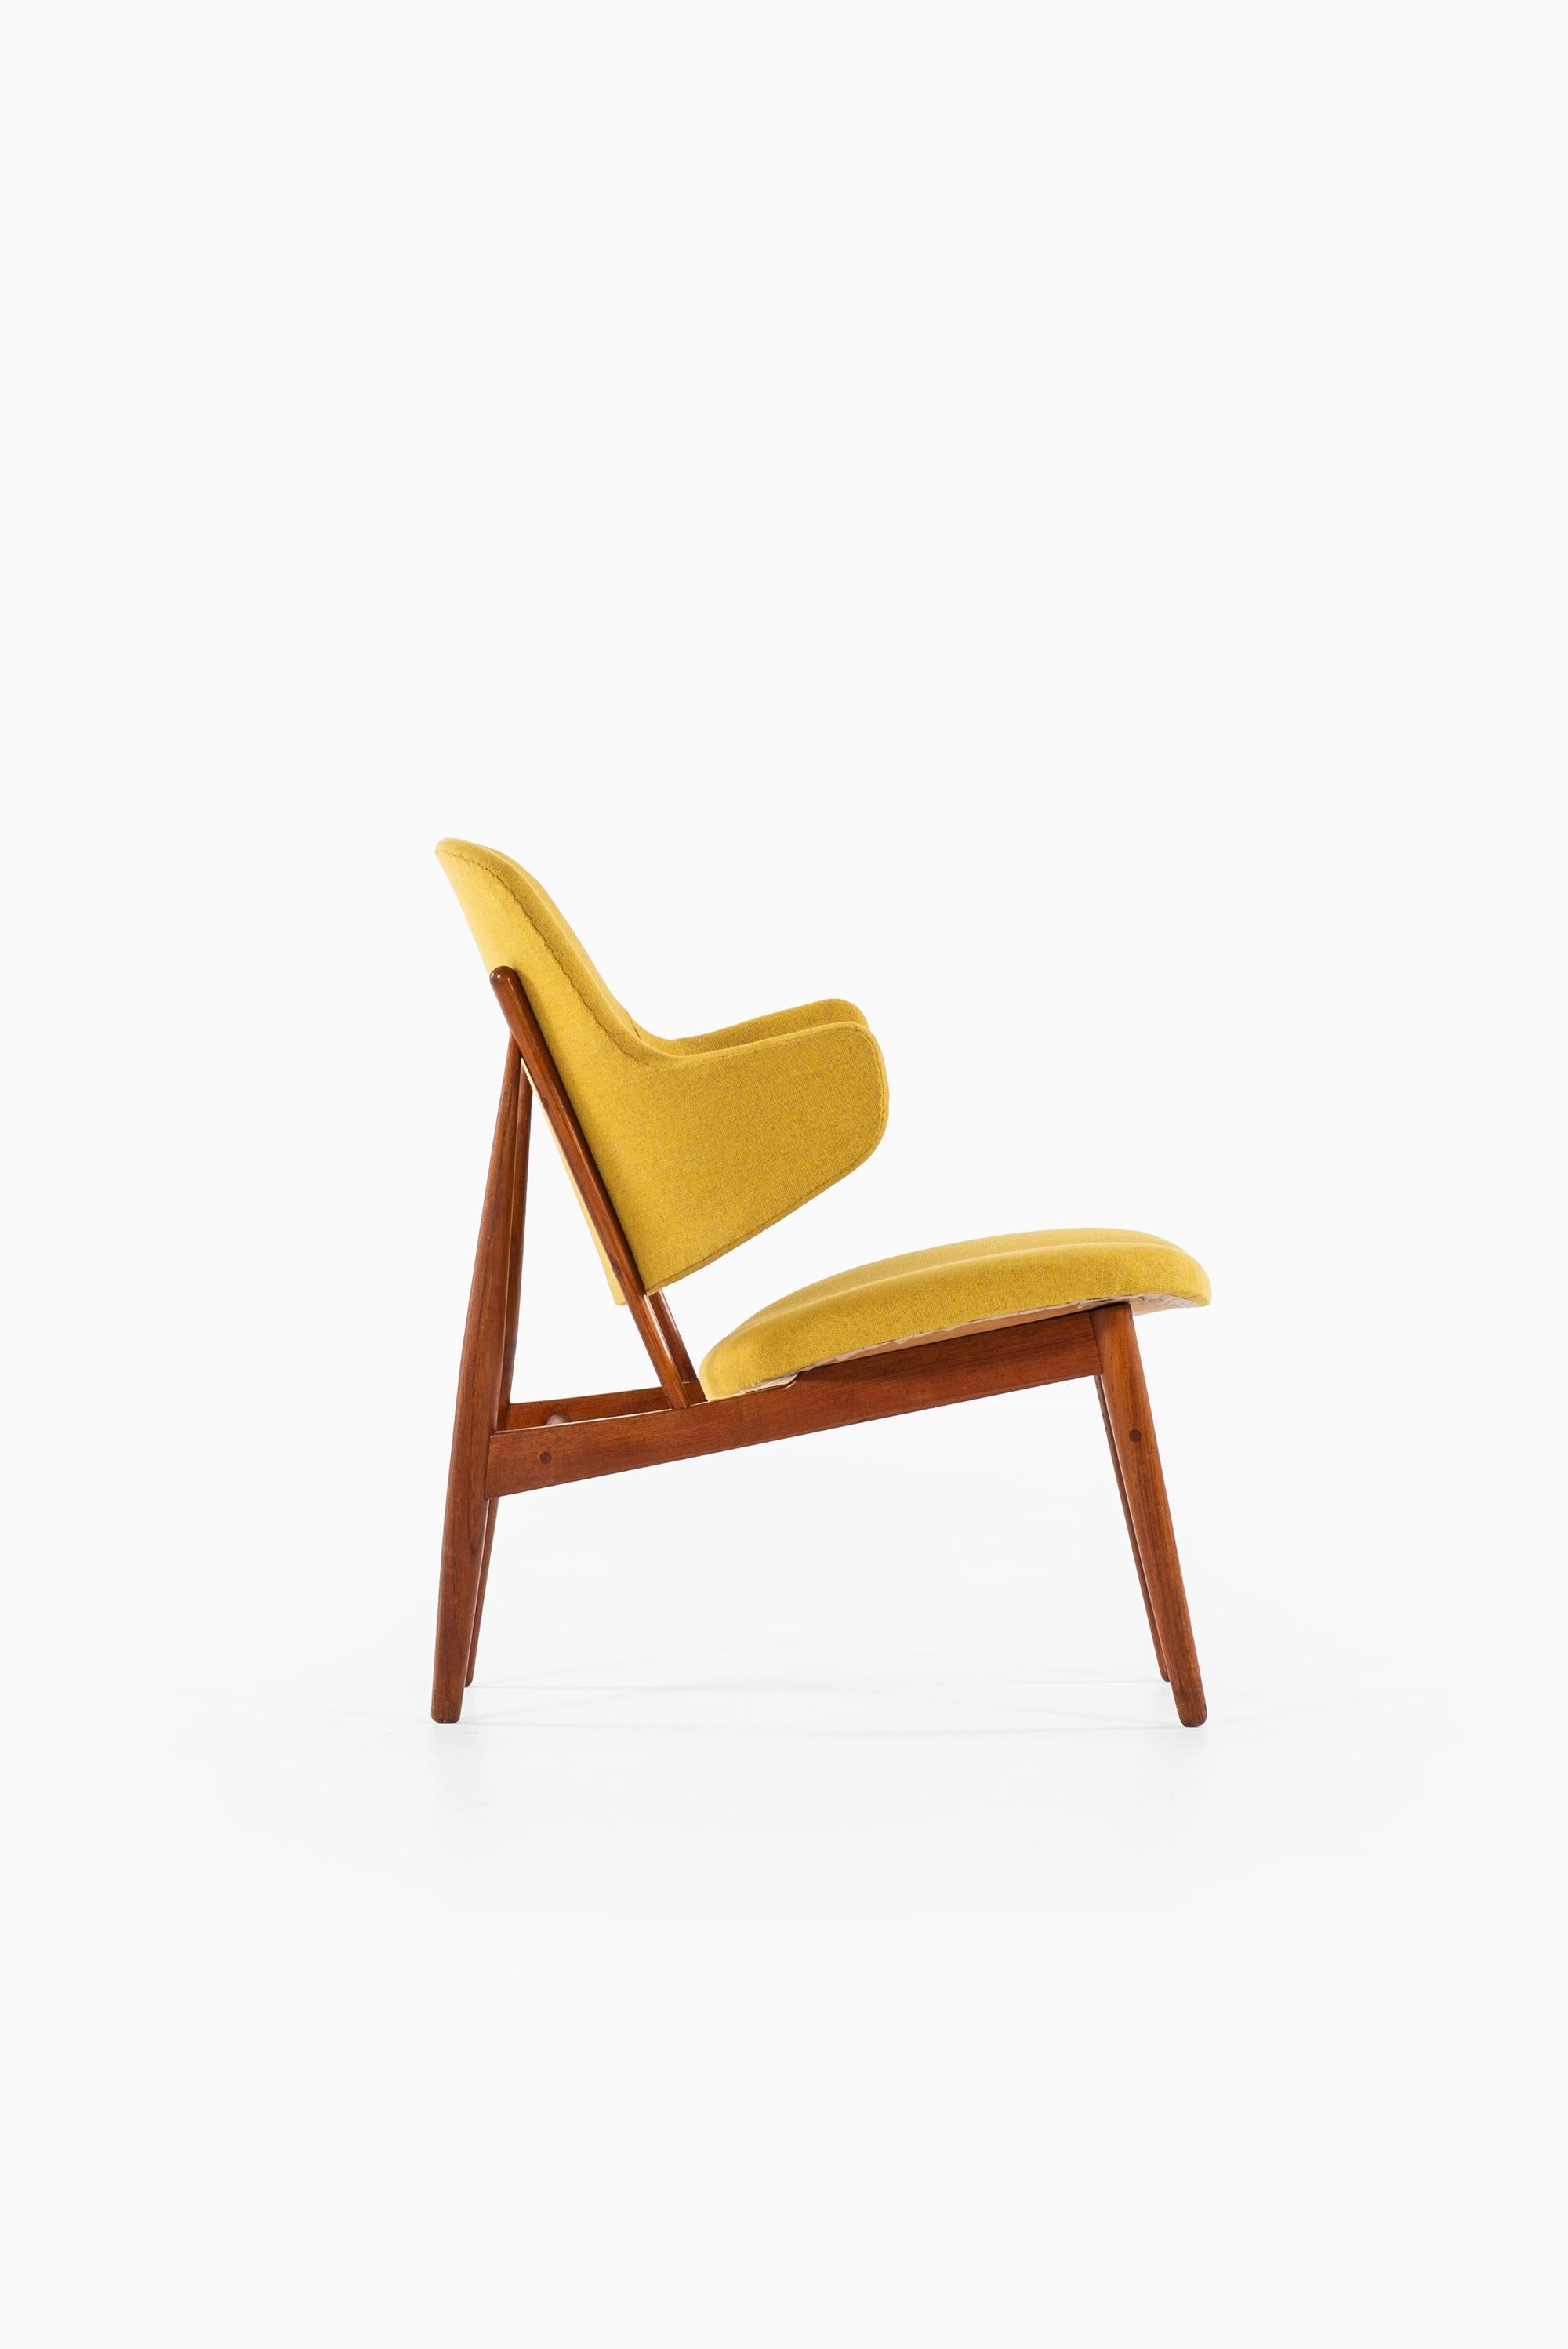 Scandinavian Modern Ib Kofod-Larsen Easy Chair by Christensen & Larsen in Denmark